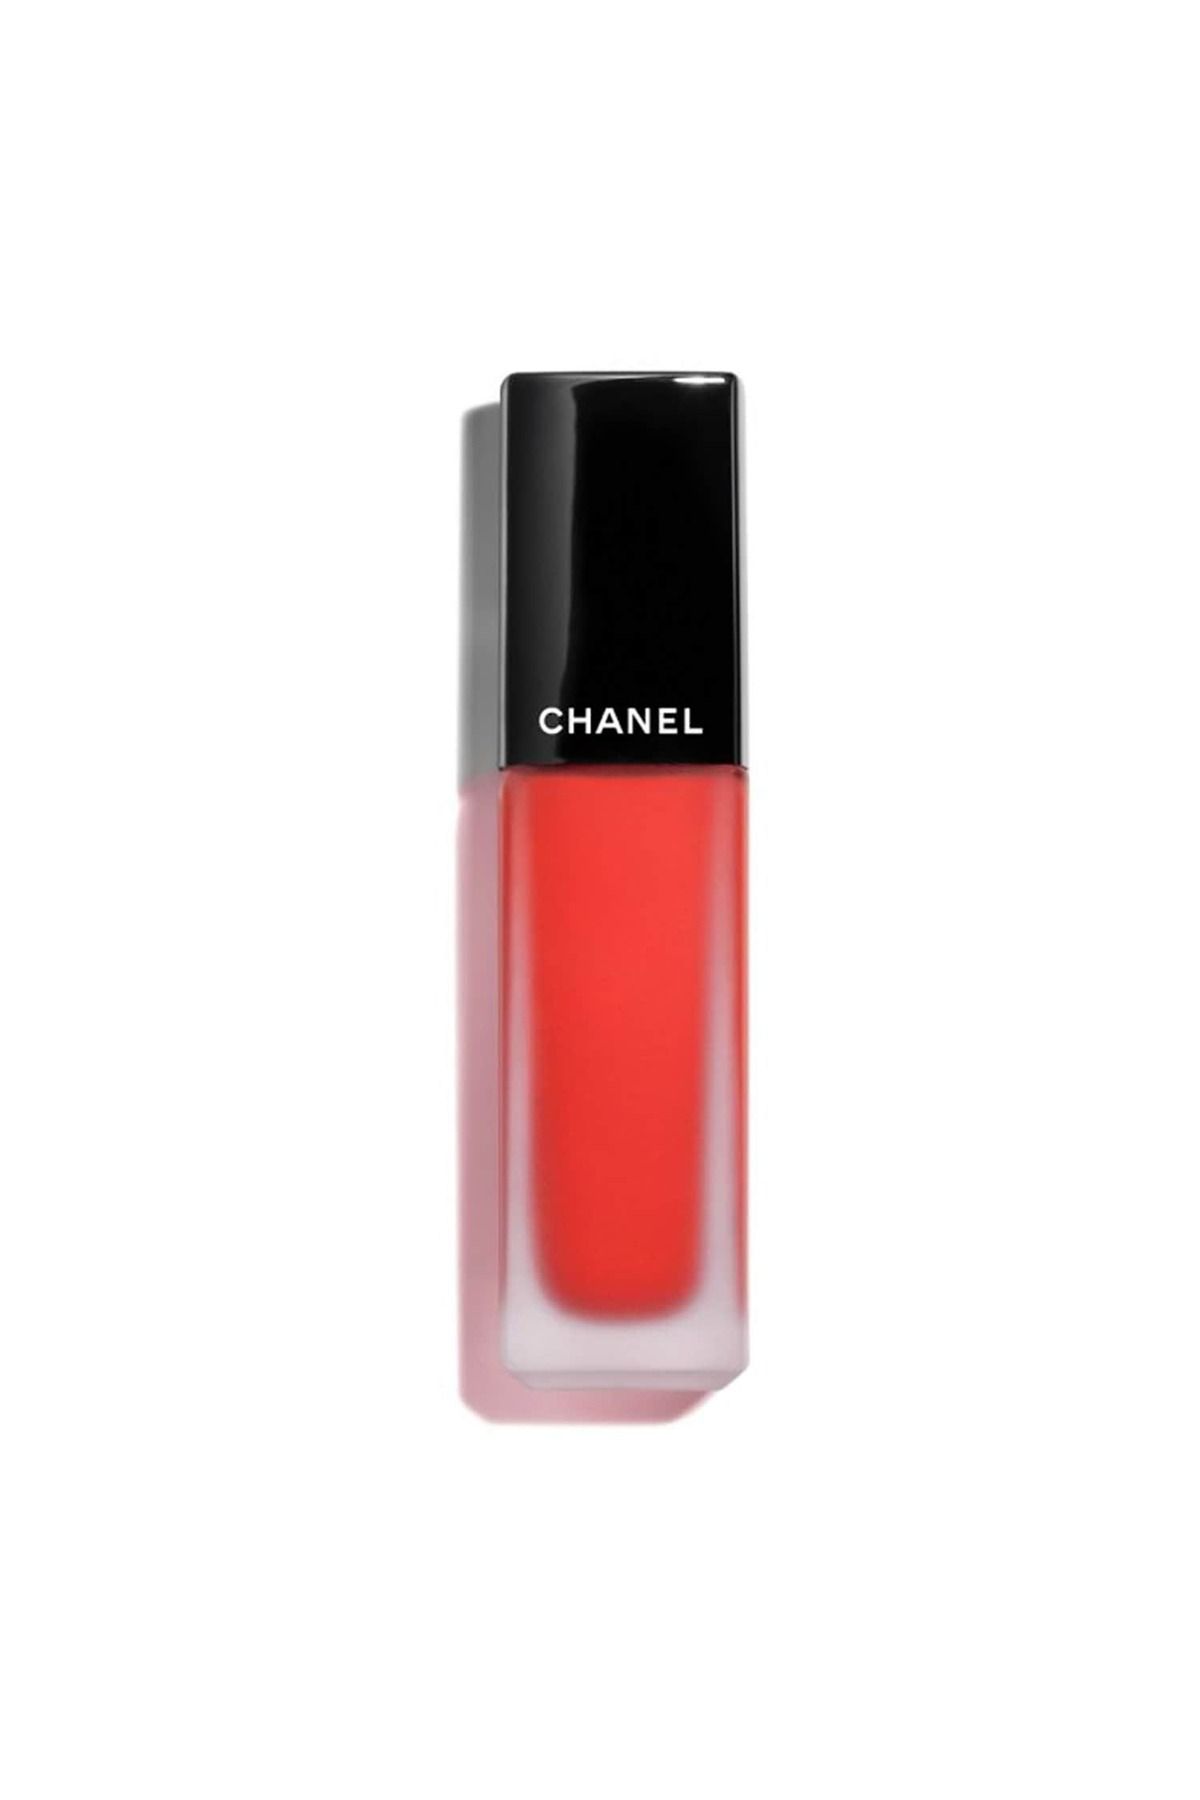 Chanel ROUGE ALLURE INK - Uzun Süre Kalıcı İpeksi Dokulu Nemlendirici Mat Ruj 6ml